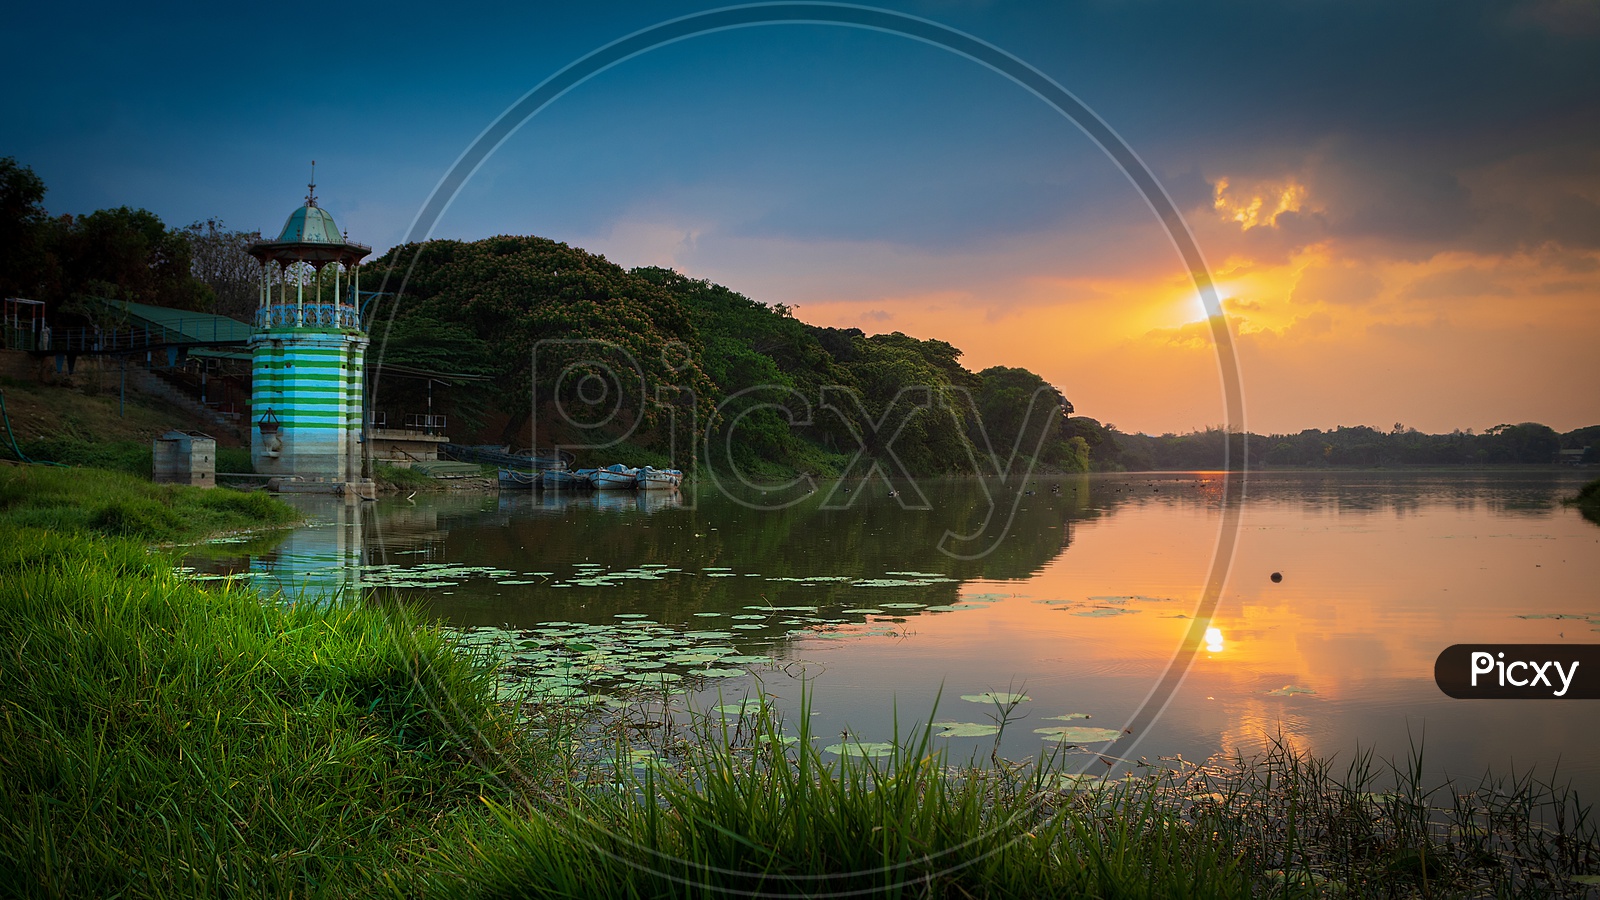 An evening at the Kukkarahalli Lake, Mysore